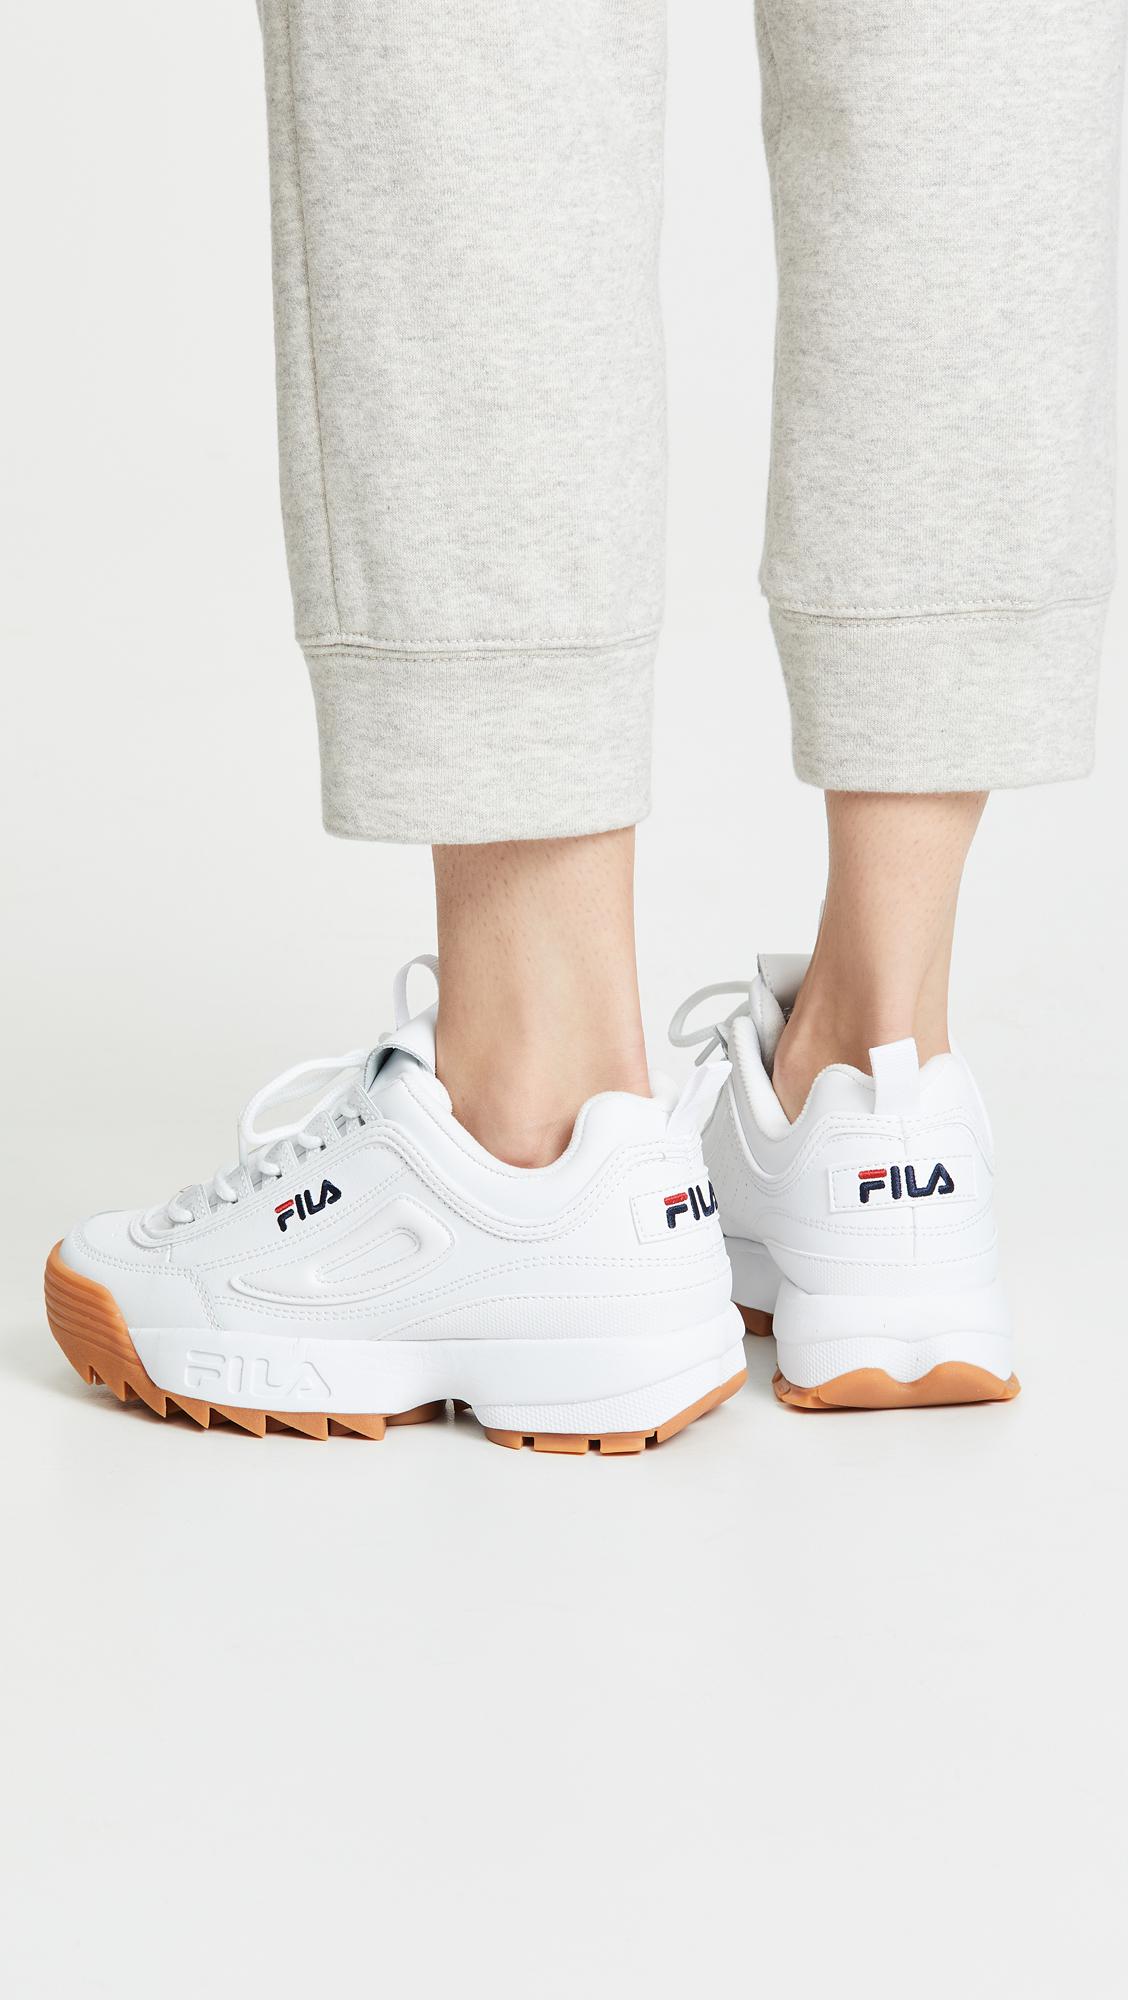 fila women's casual shoes